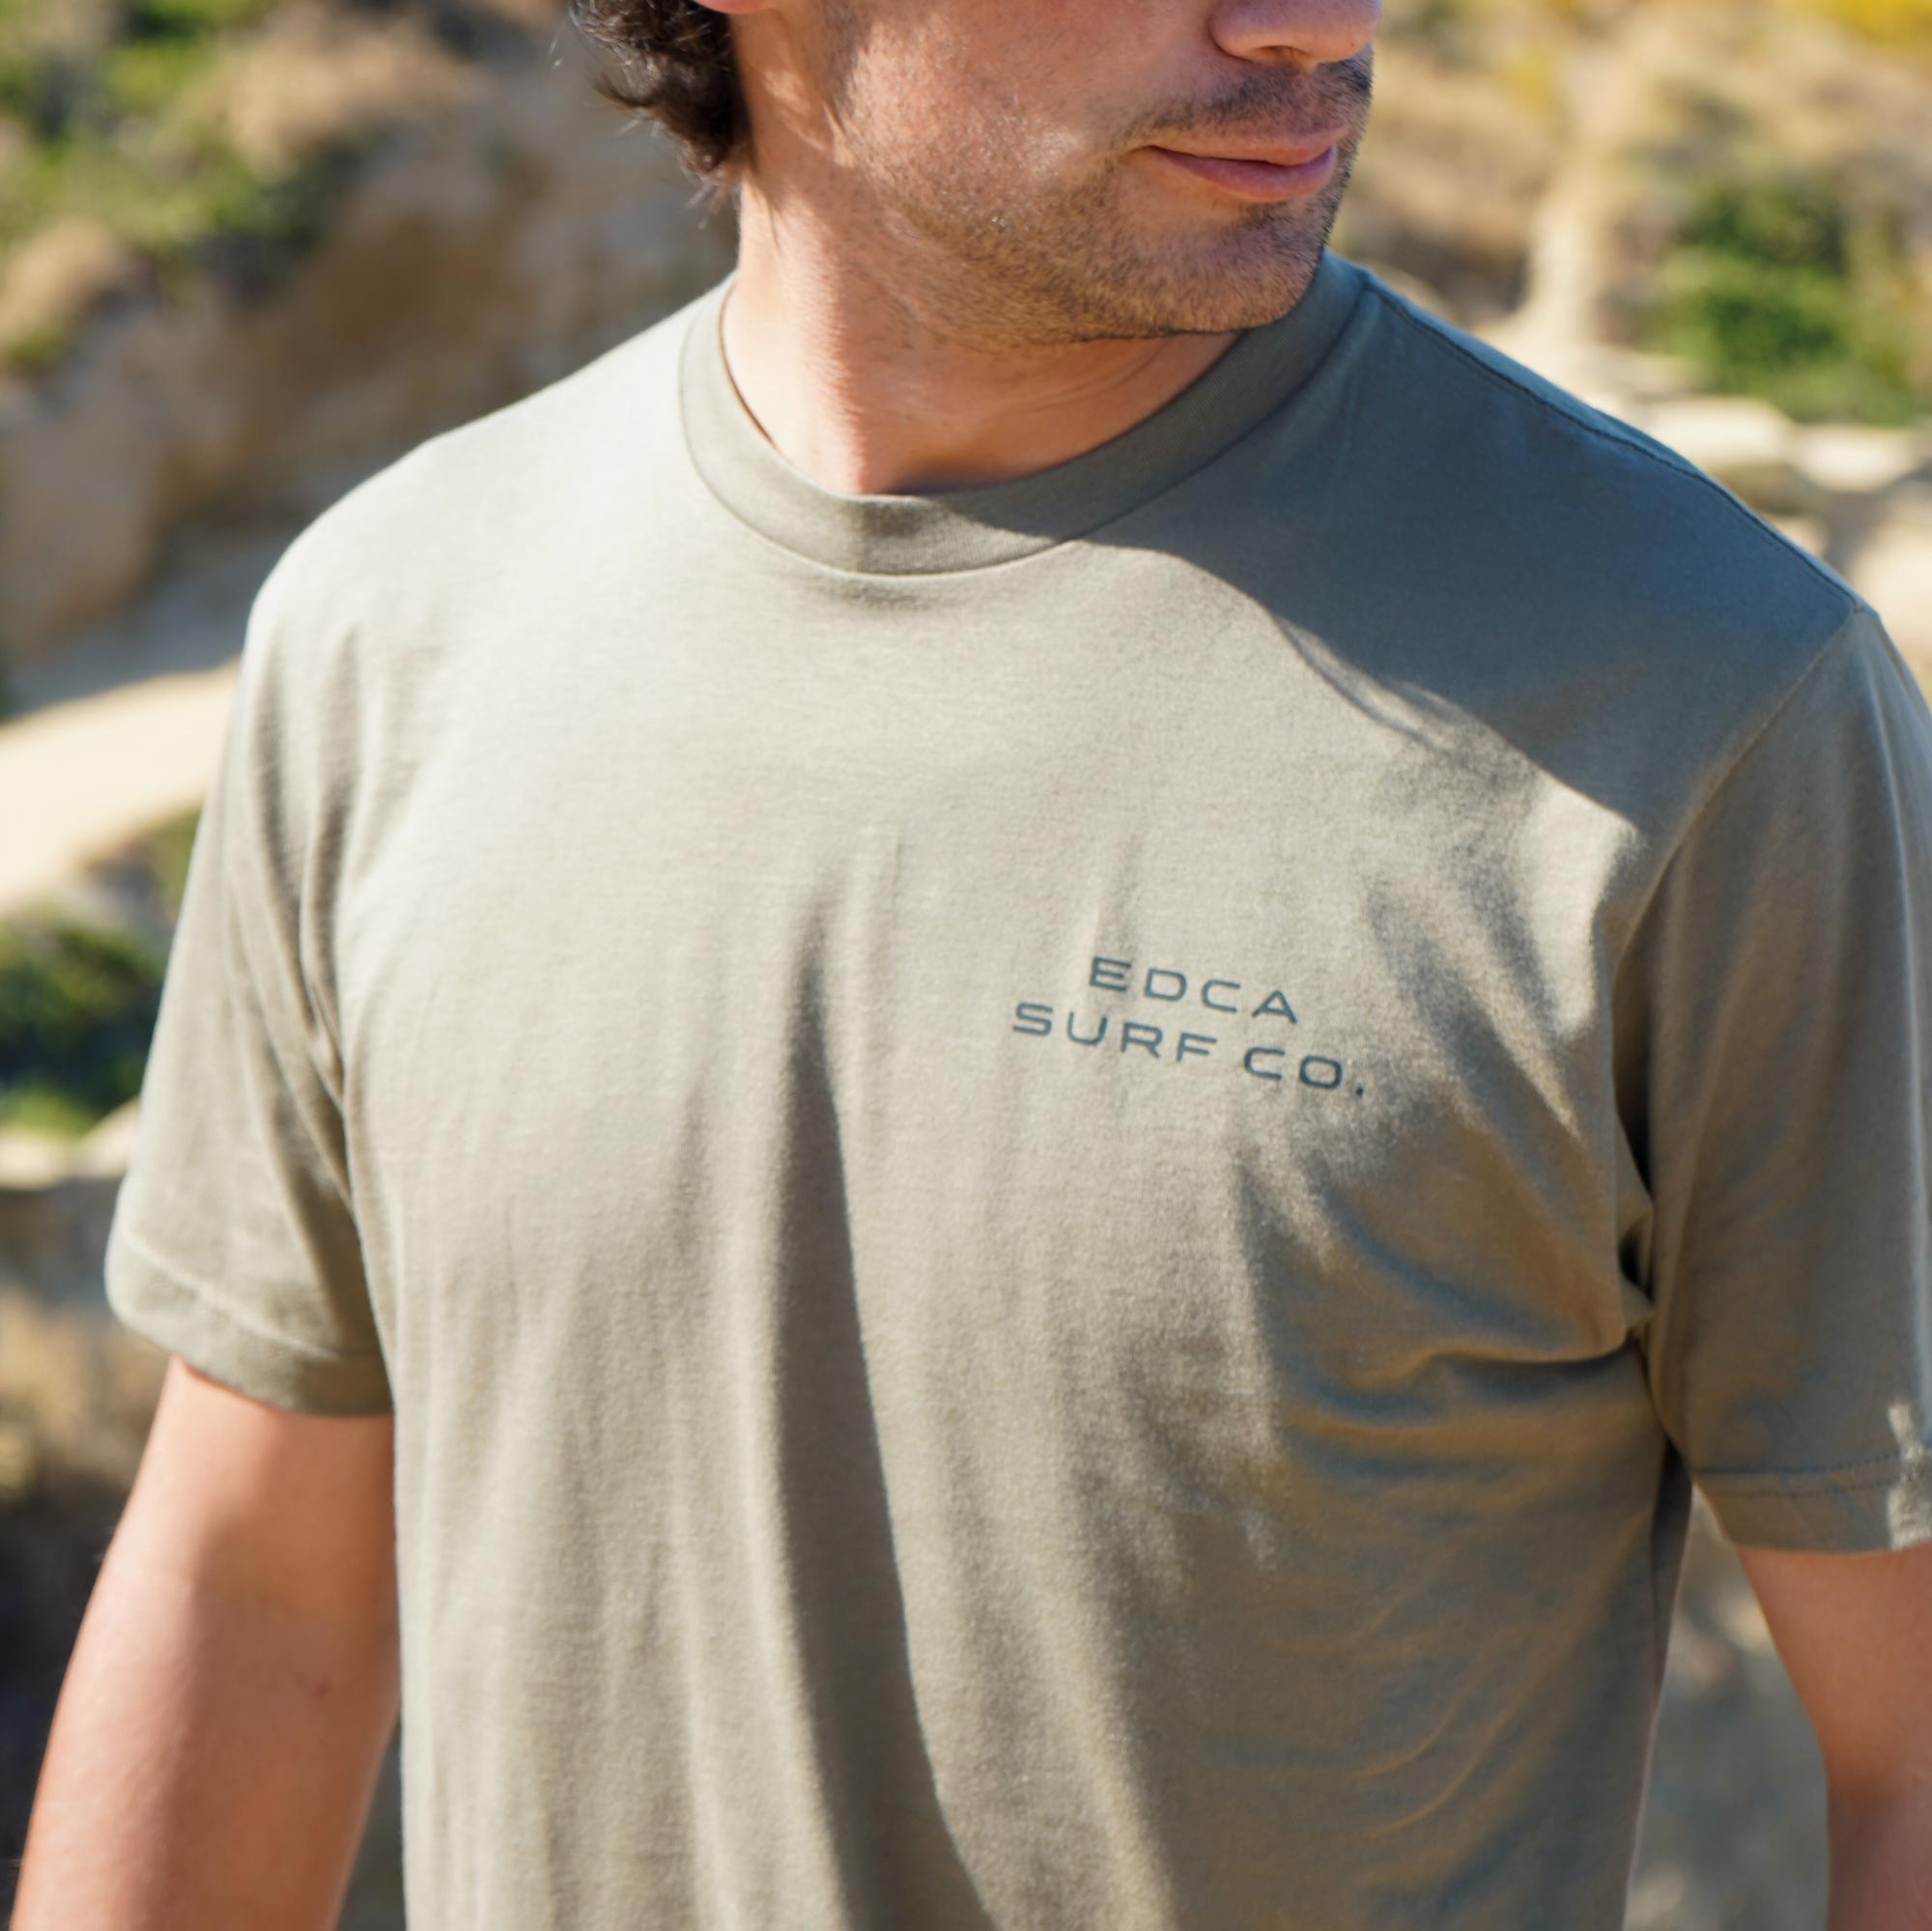 Camiseta del paseo marítimo